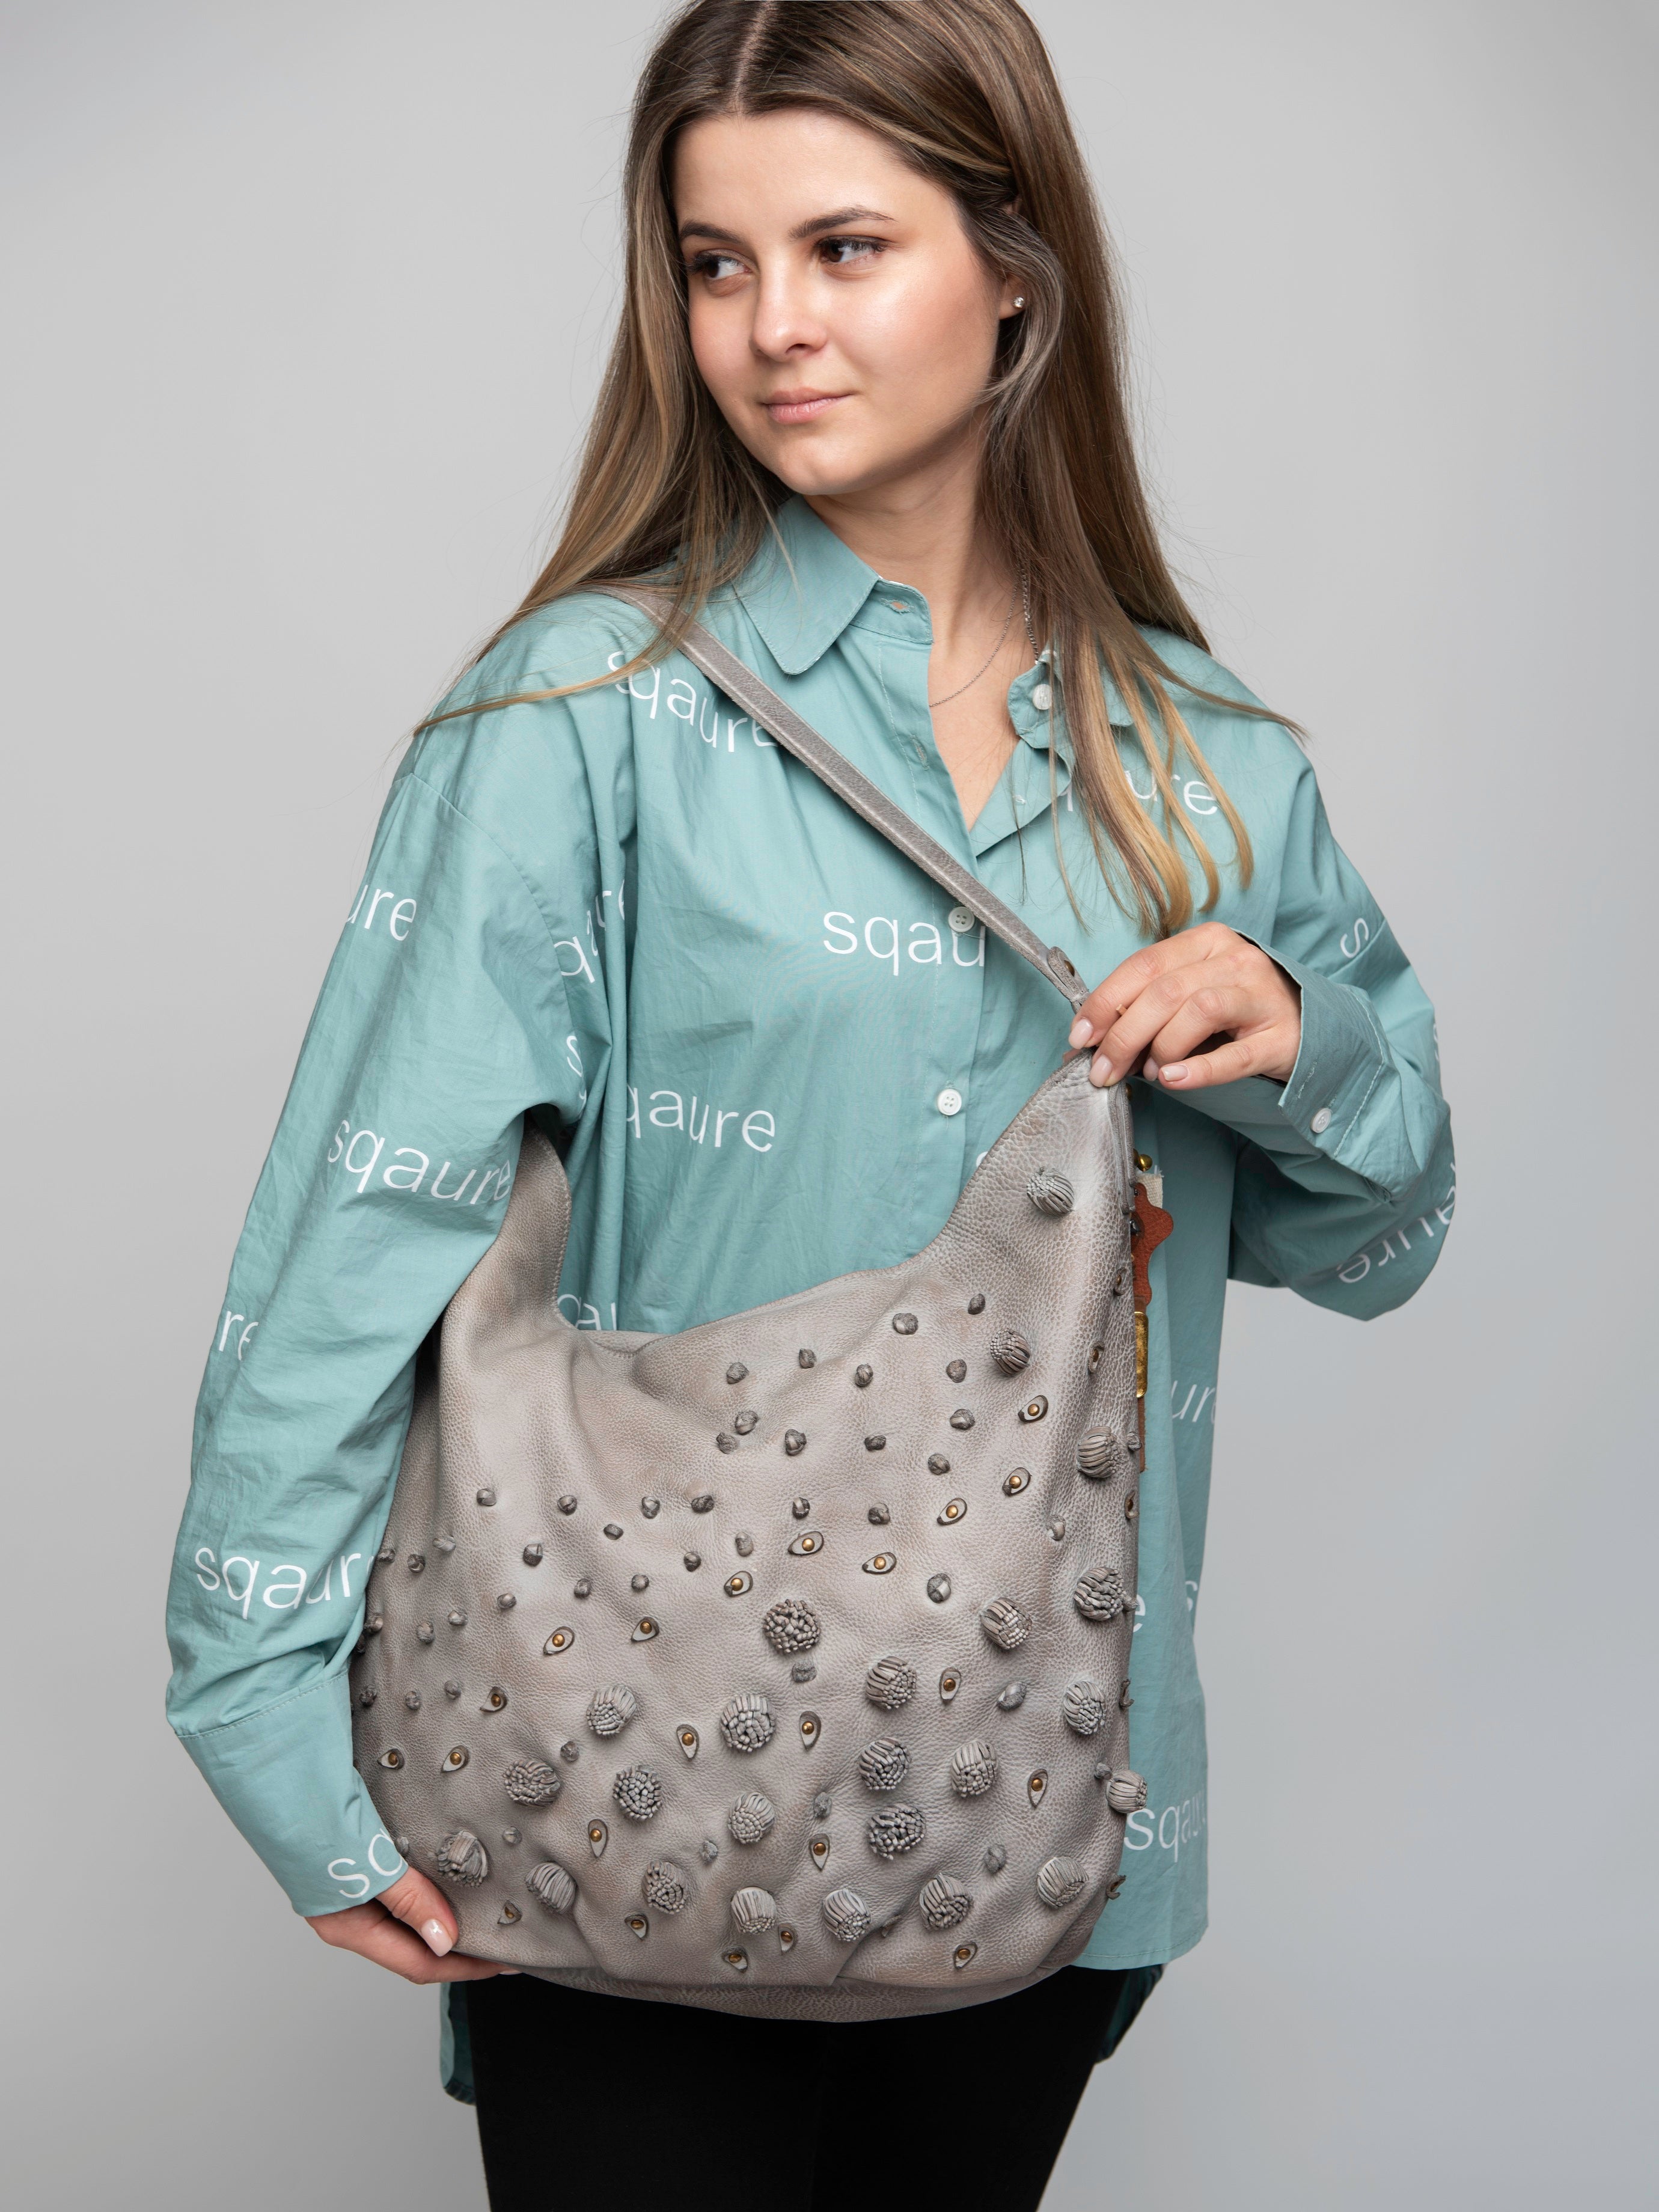 GAROFANO: Grey leather handcrafted shoulder shopper bag by Art N Vintage